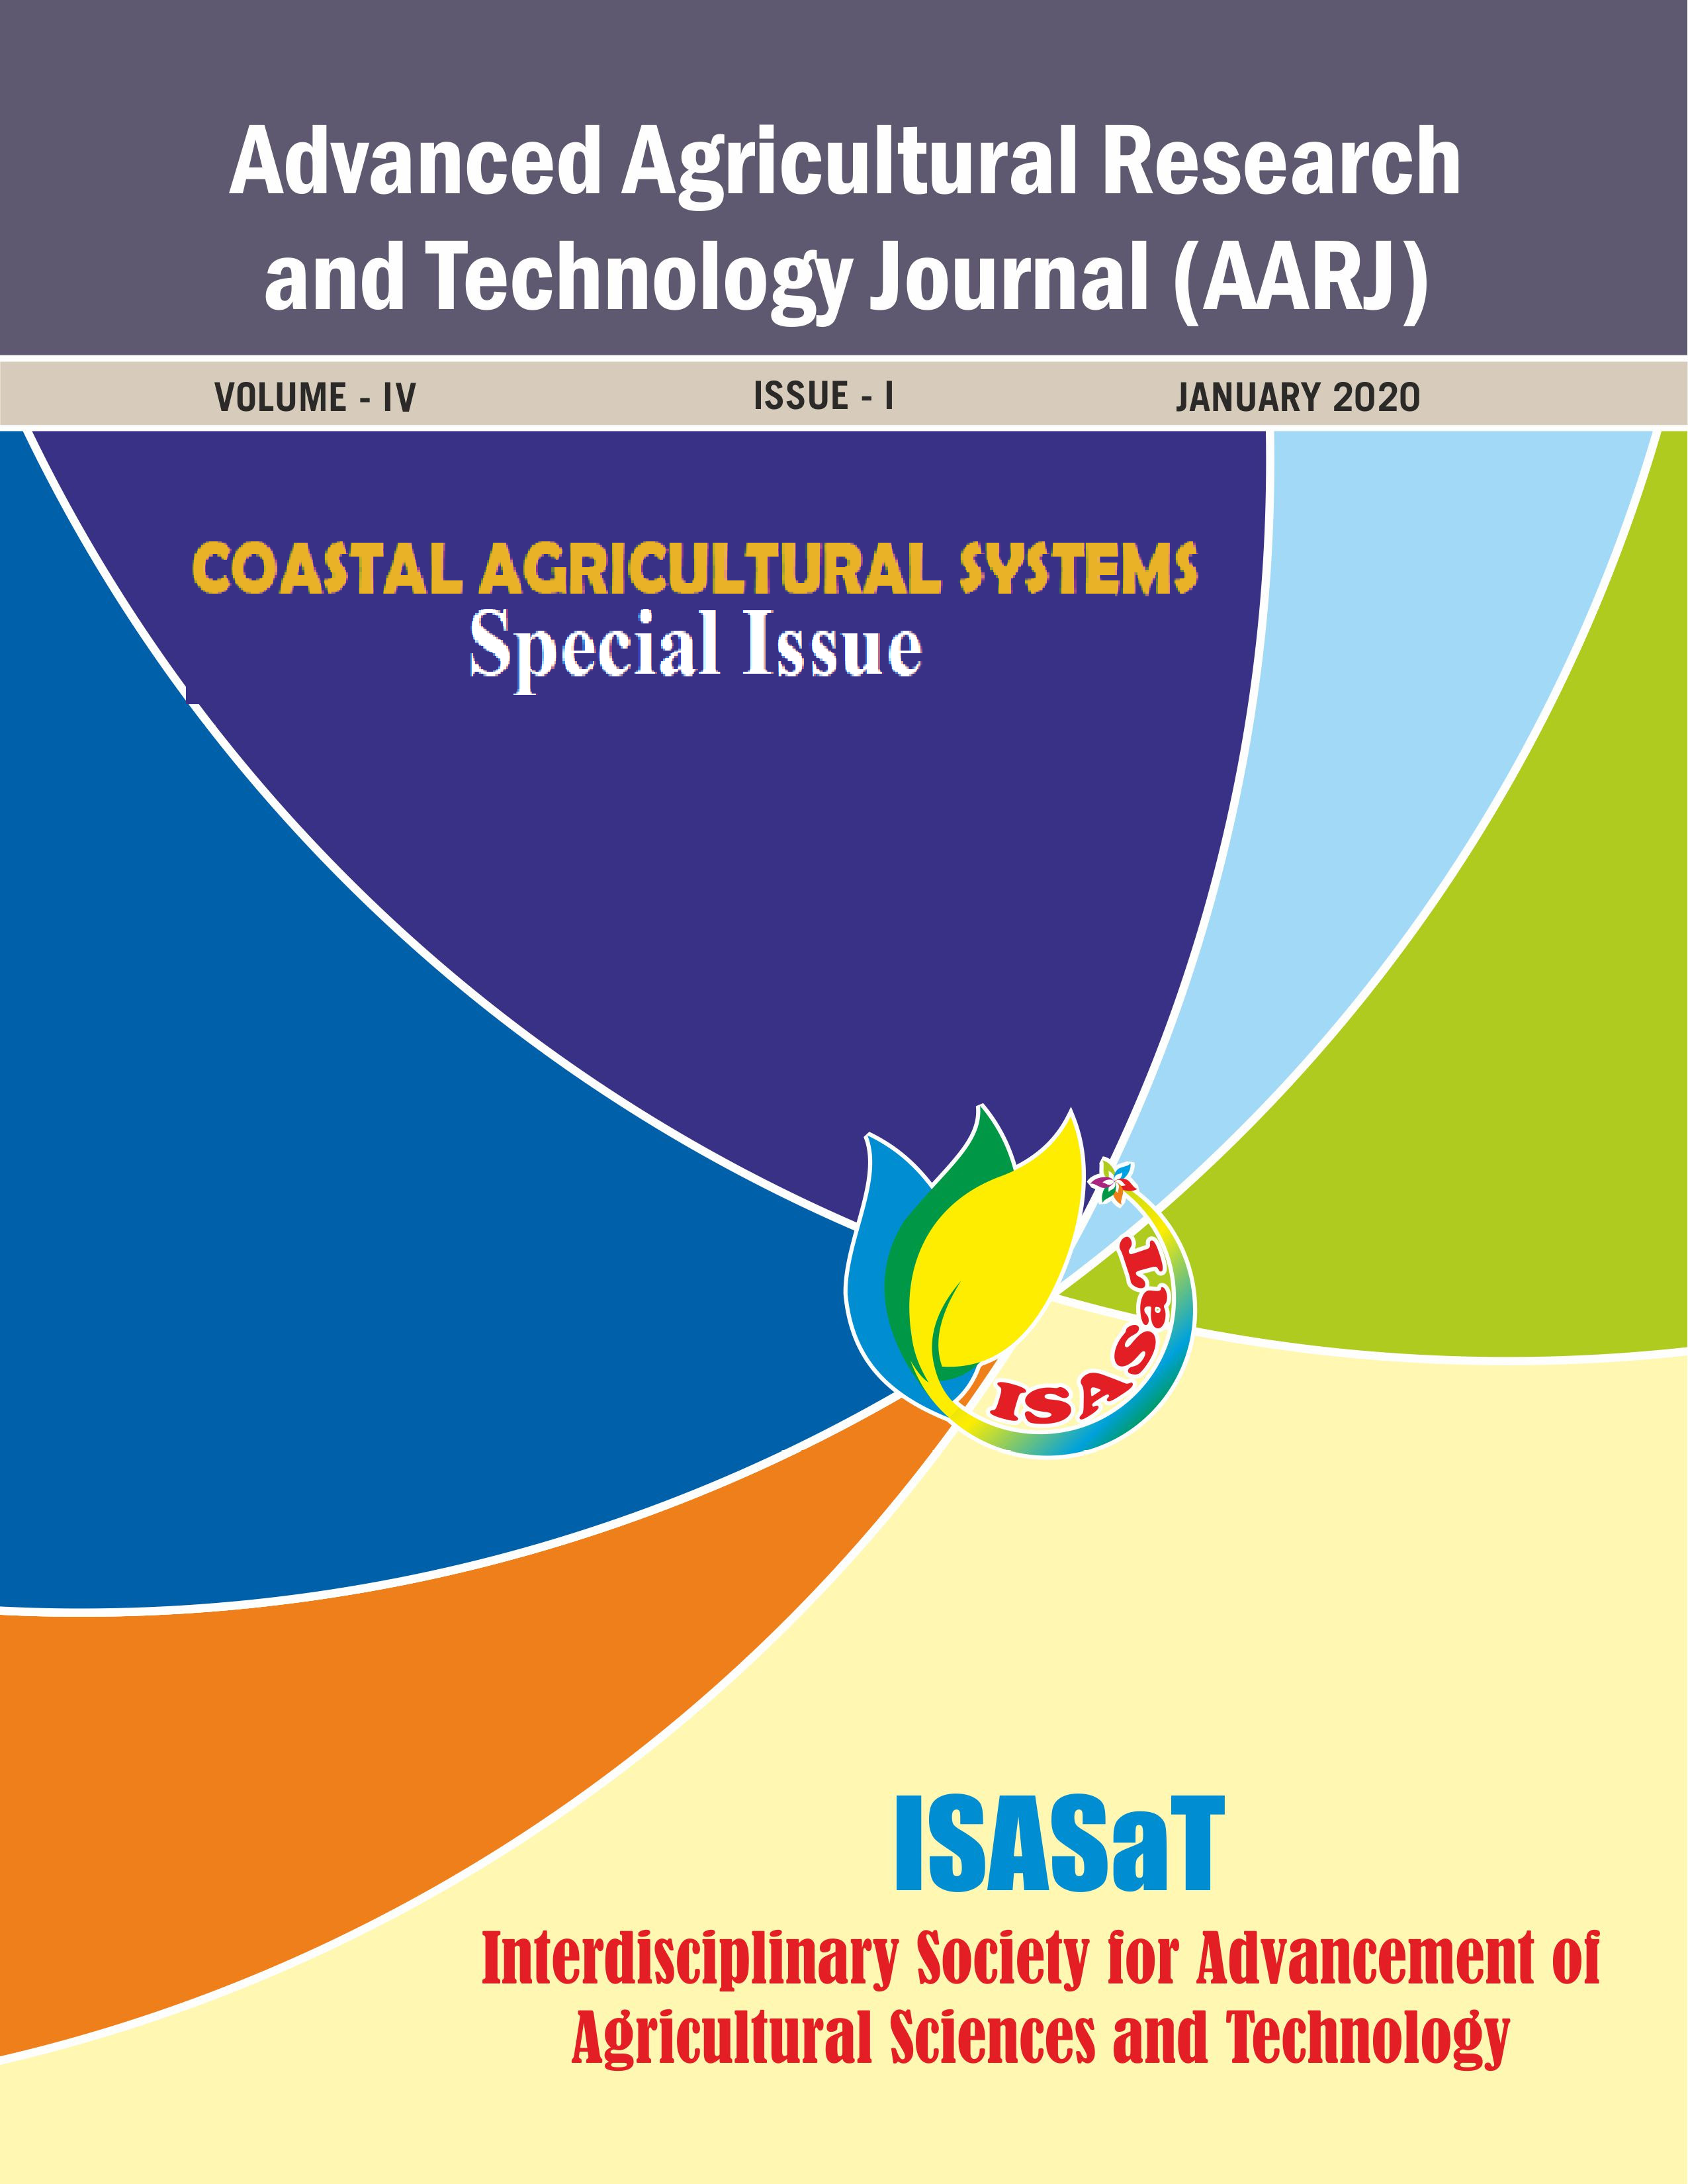 ISASaT Journal